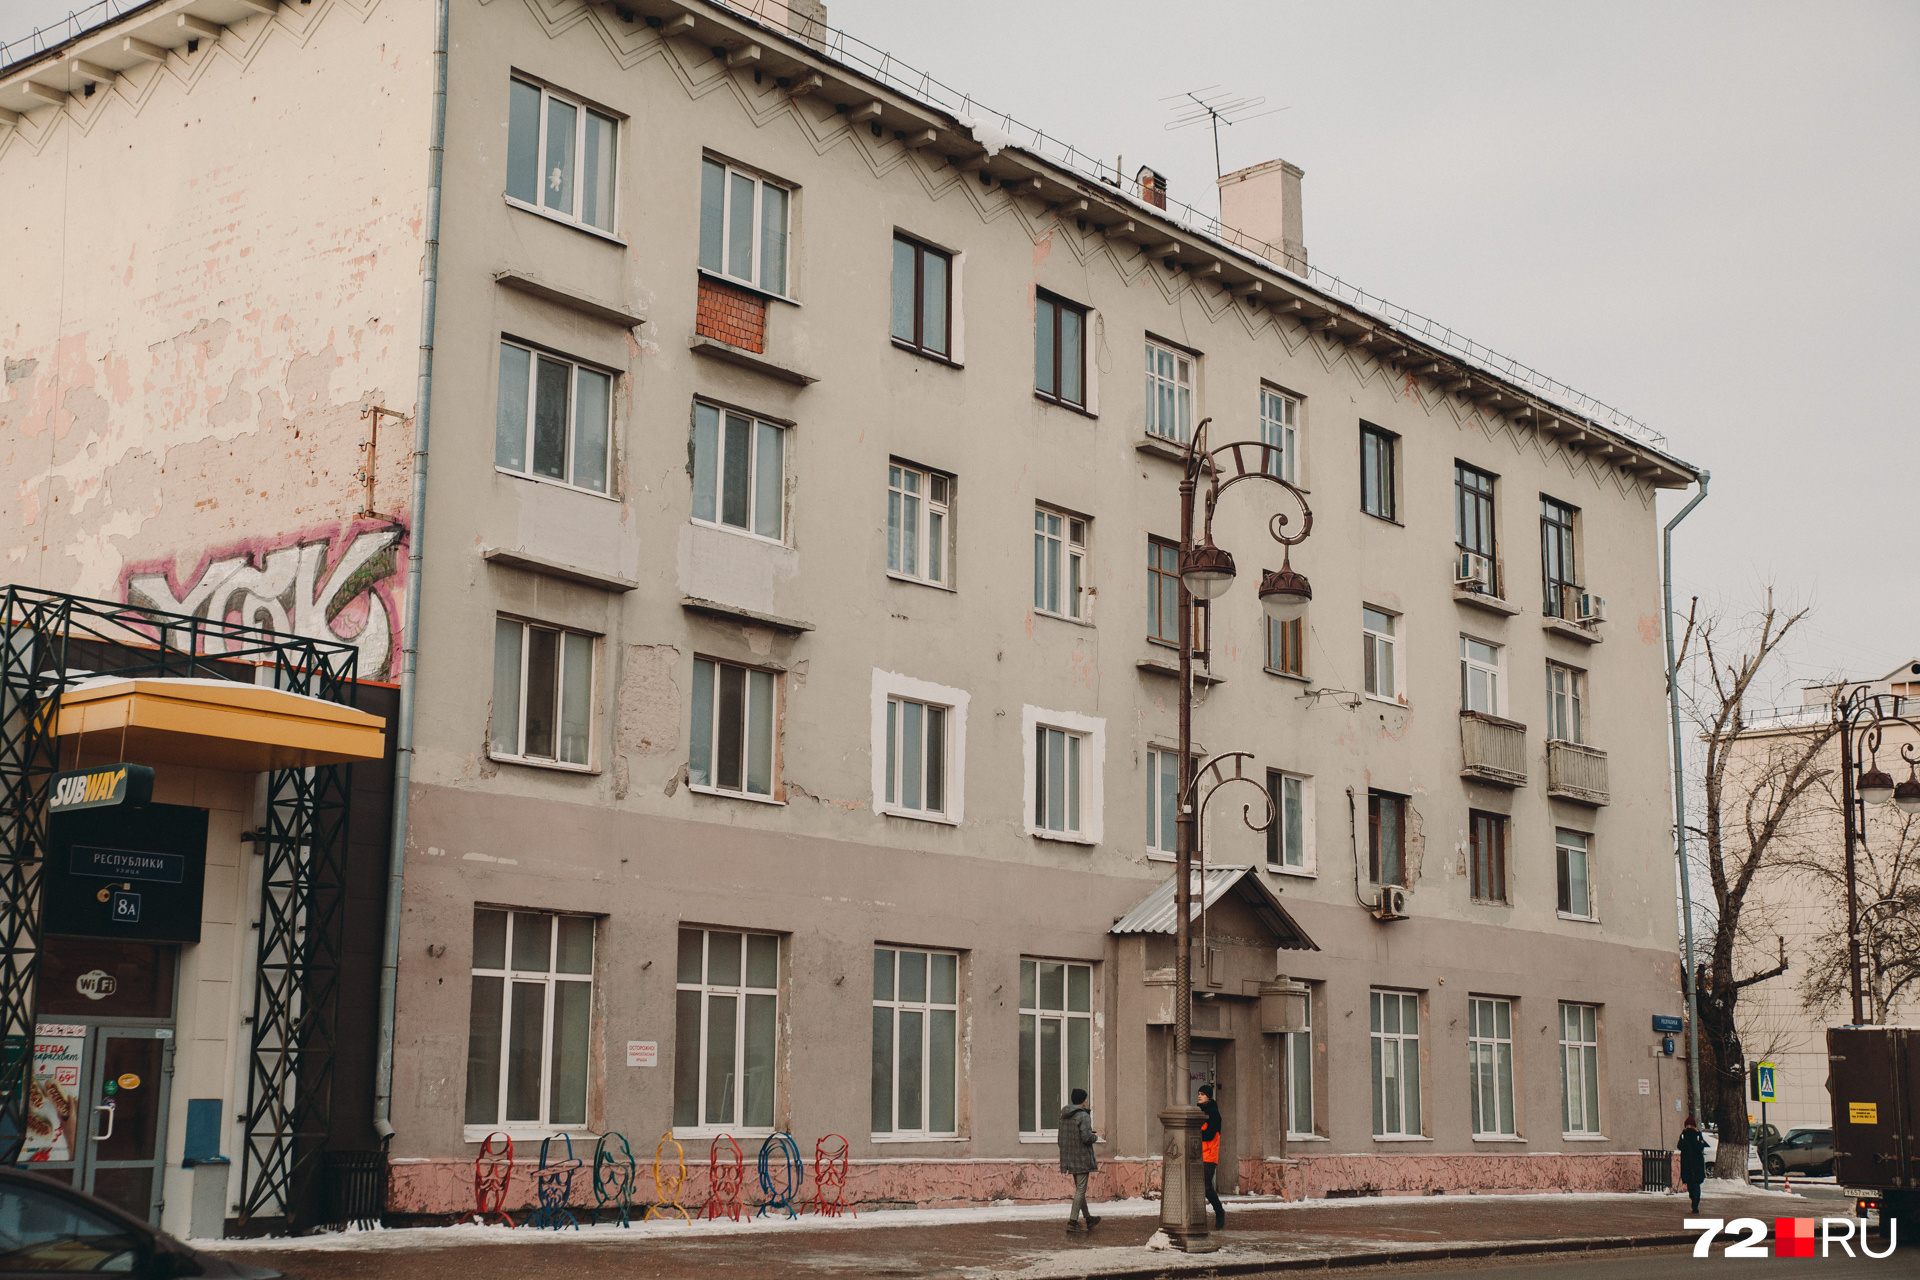 Некоторые дома, построенные в советское время, выглядят крайне неопрятно 